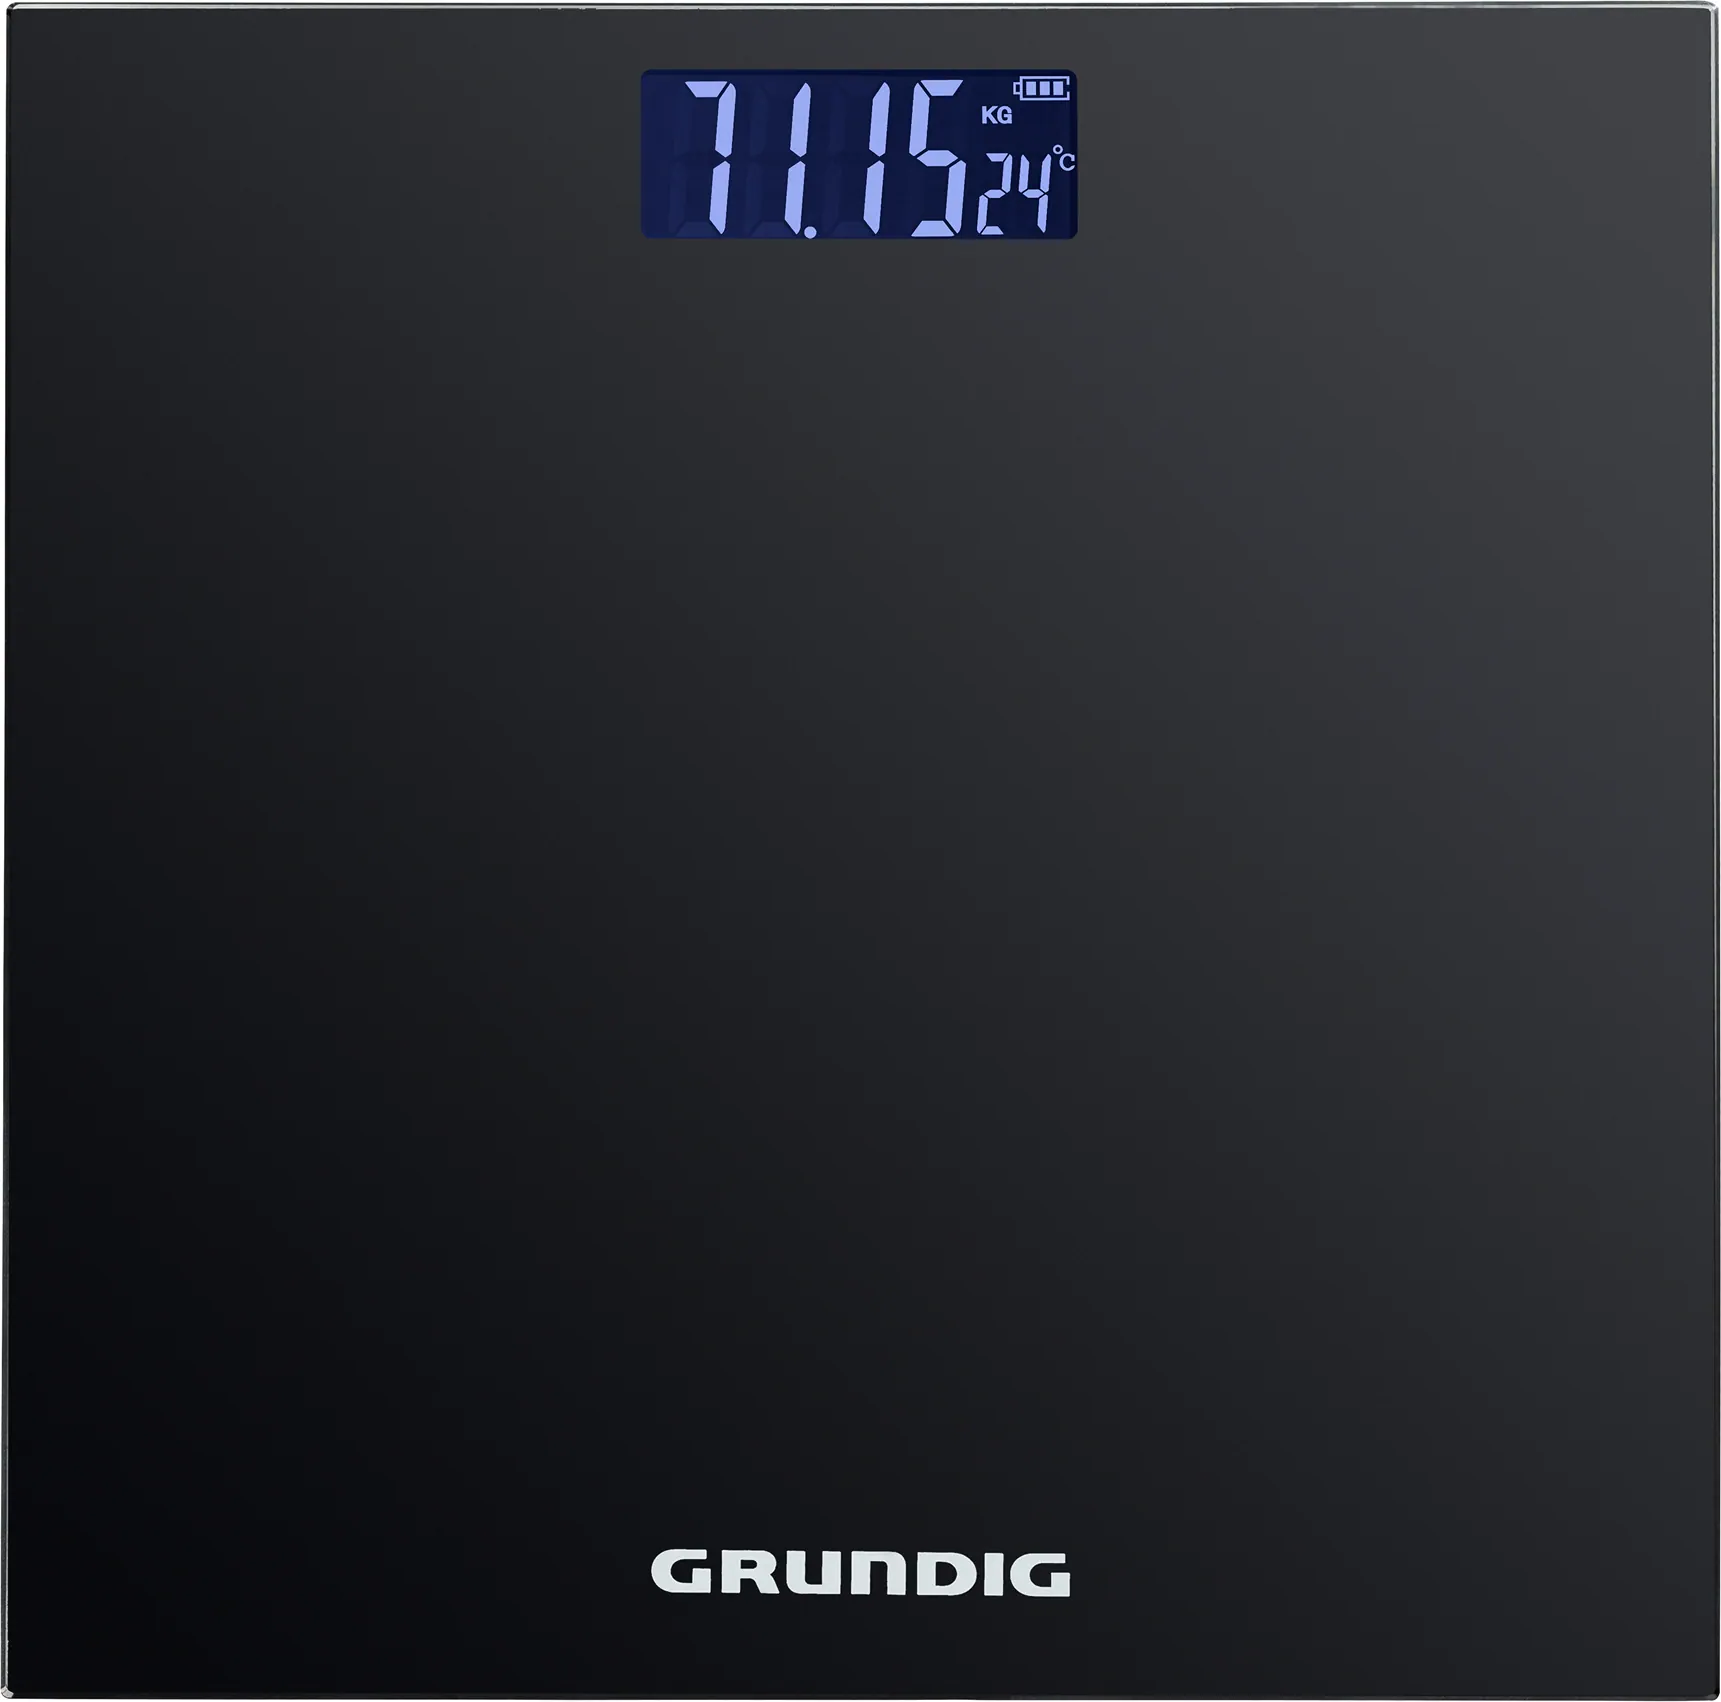 Waga łazienkowa elektroniczna GRUNDIG 28cm 180kg